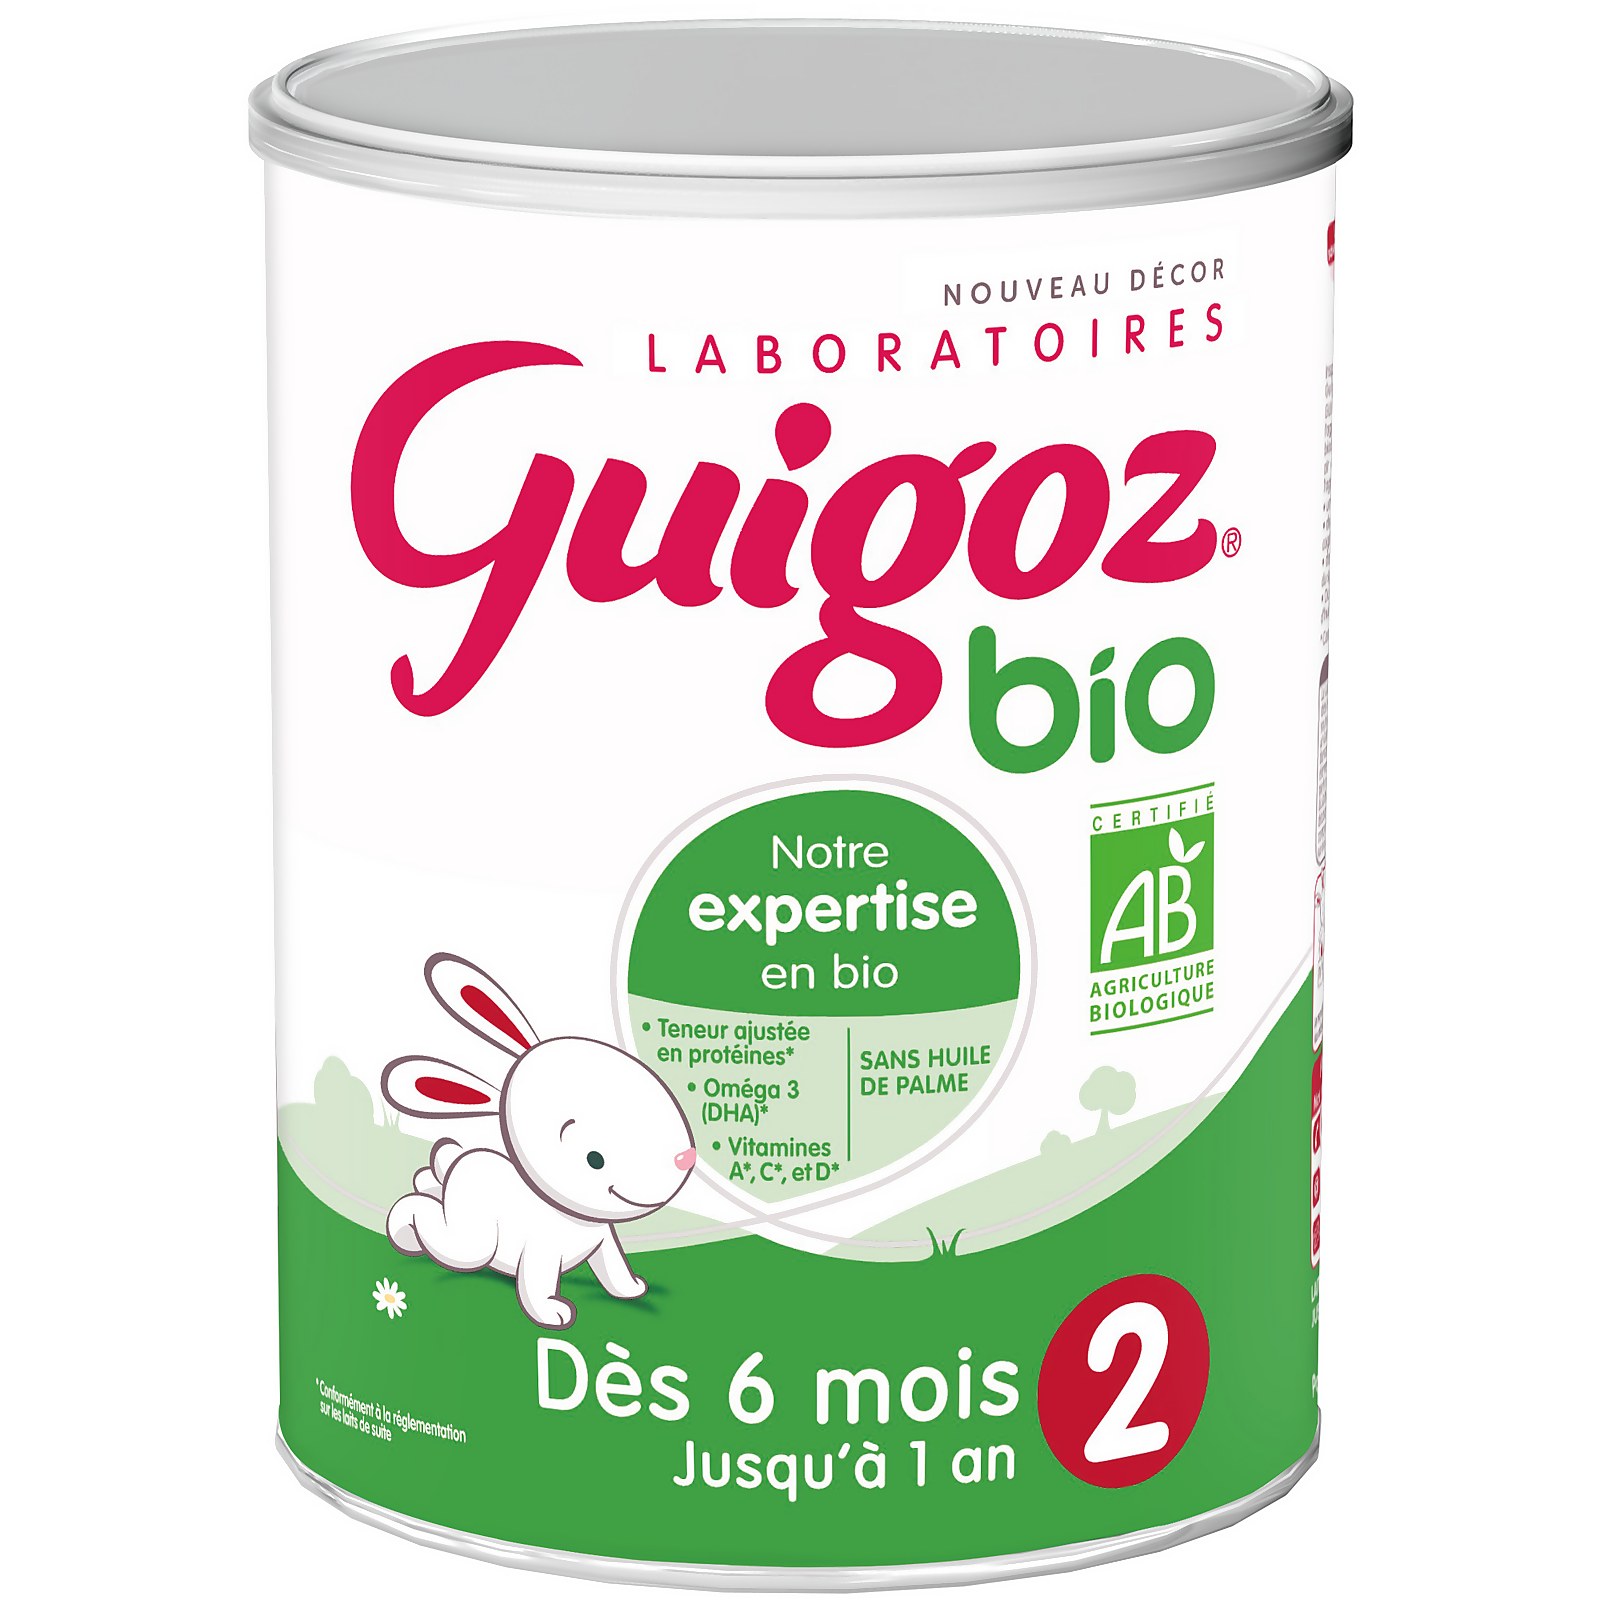 GUIGOZ® 2 Bio - Dès 6 mois - 800g